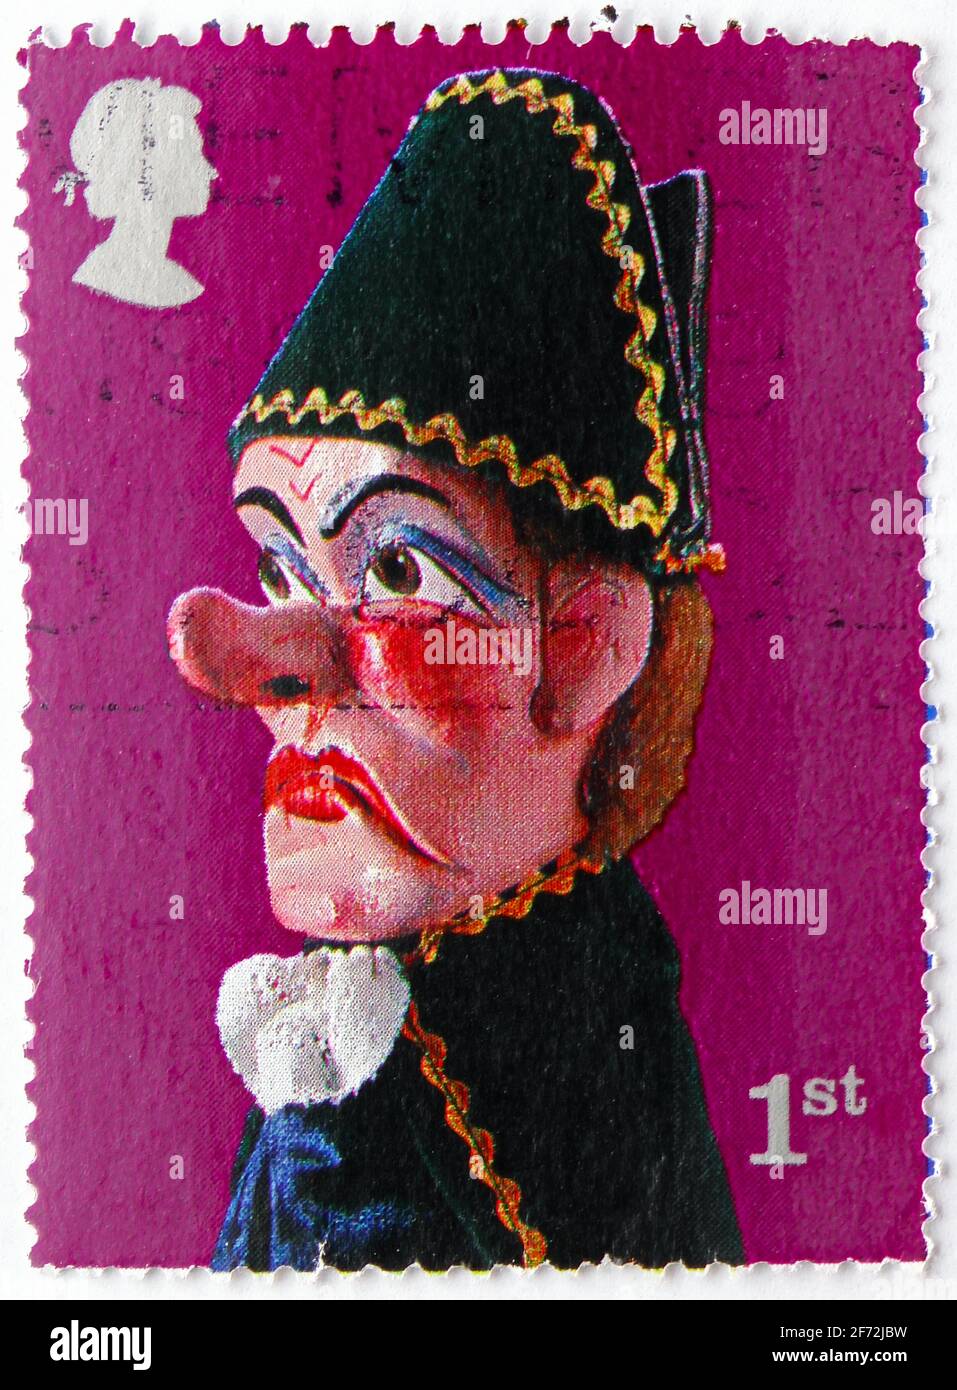 MOSCOU, RUSSIE - 22 DÉCEMBRE 2020: Timbre-poste imprimé au Royaume-Uni montre la série Beadle, Punch and Judy Show Puppets, vers 2001 Banque D'Images